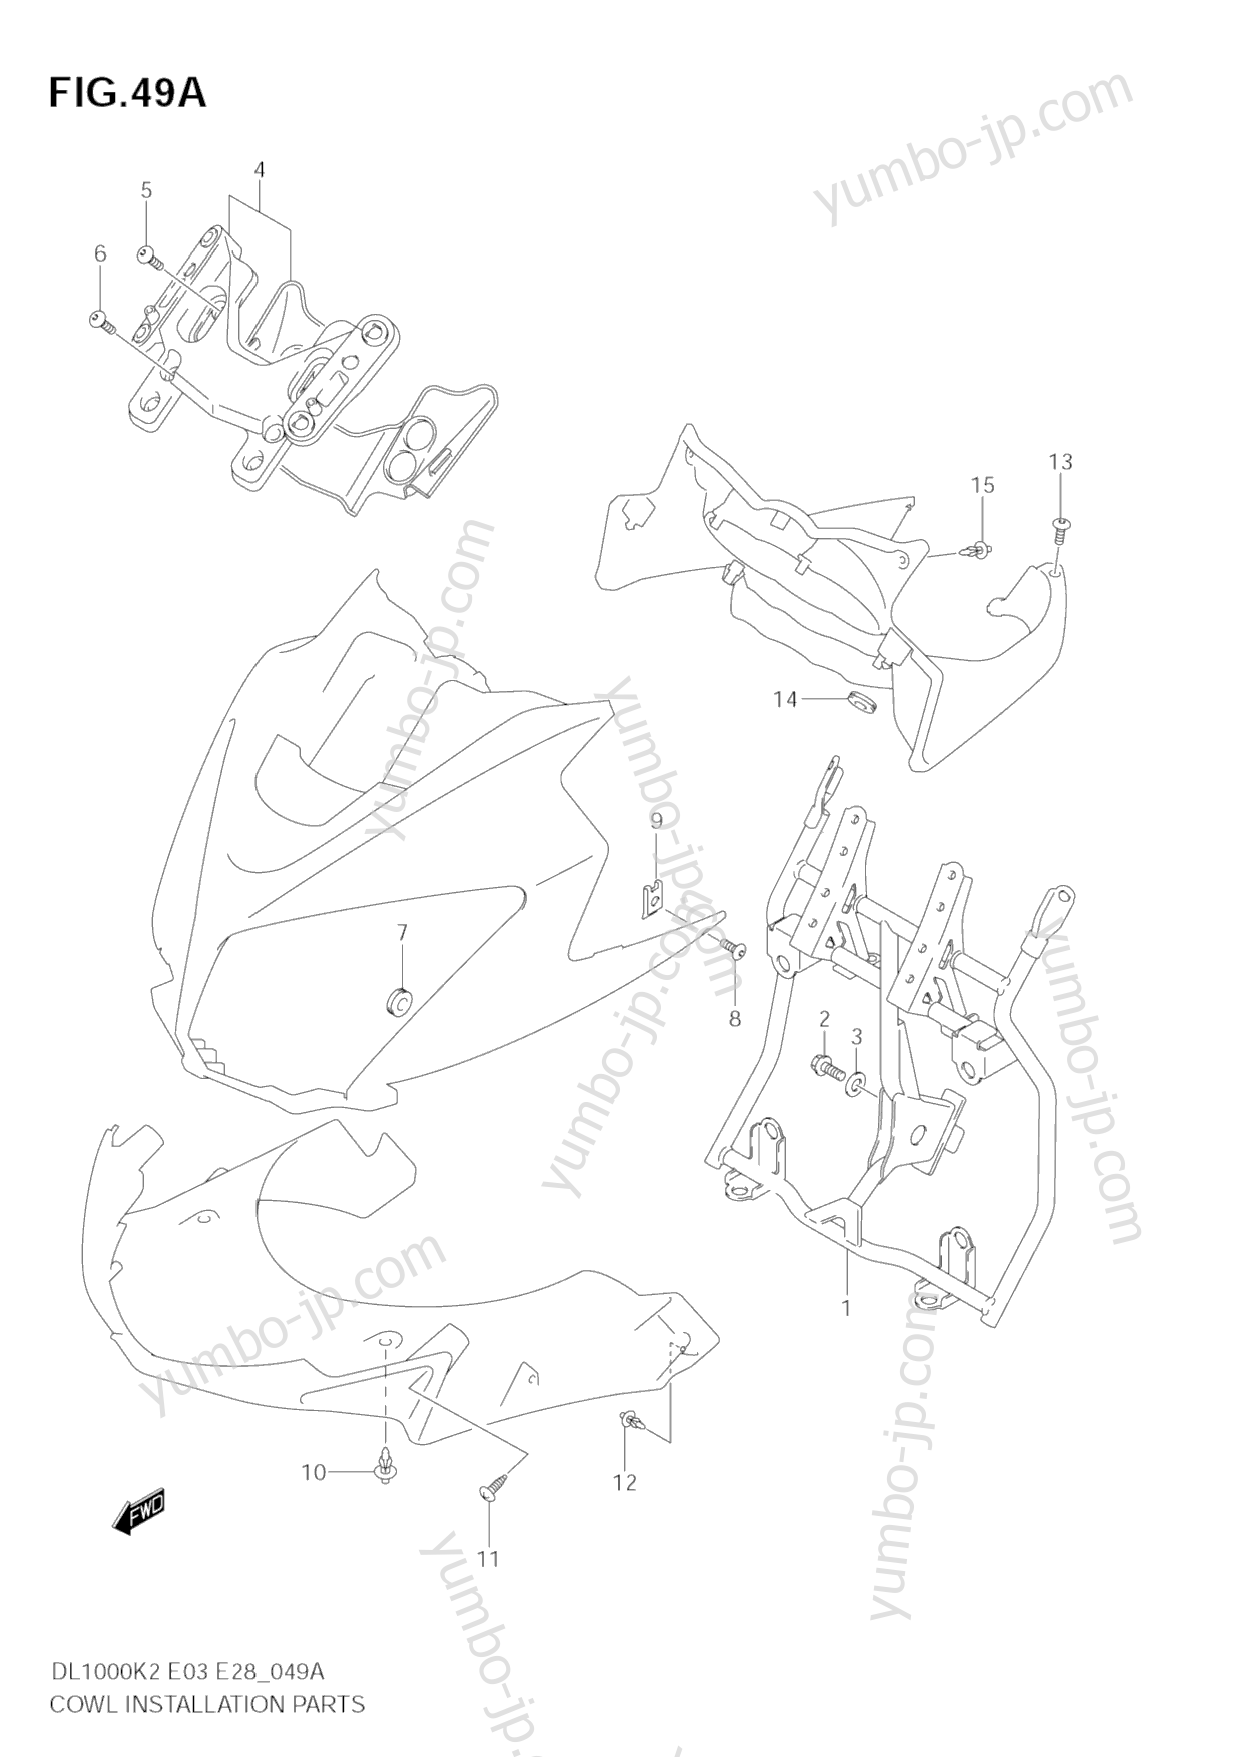 COWL BODY INSTALLATION PARTS (MODEL K4/K5/K6) for motorcycles SUZUKI V-Strom (DL1000) 2004 year